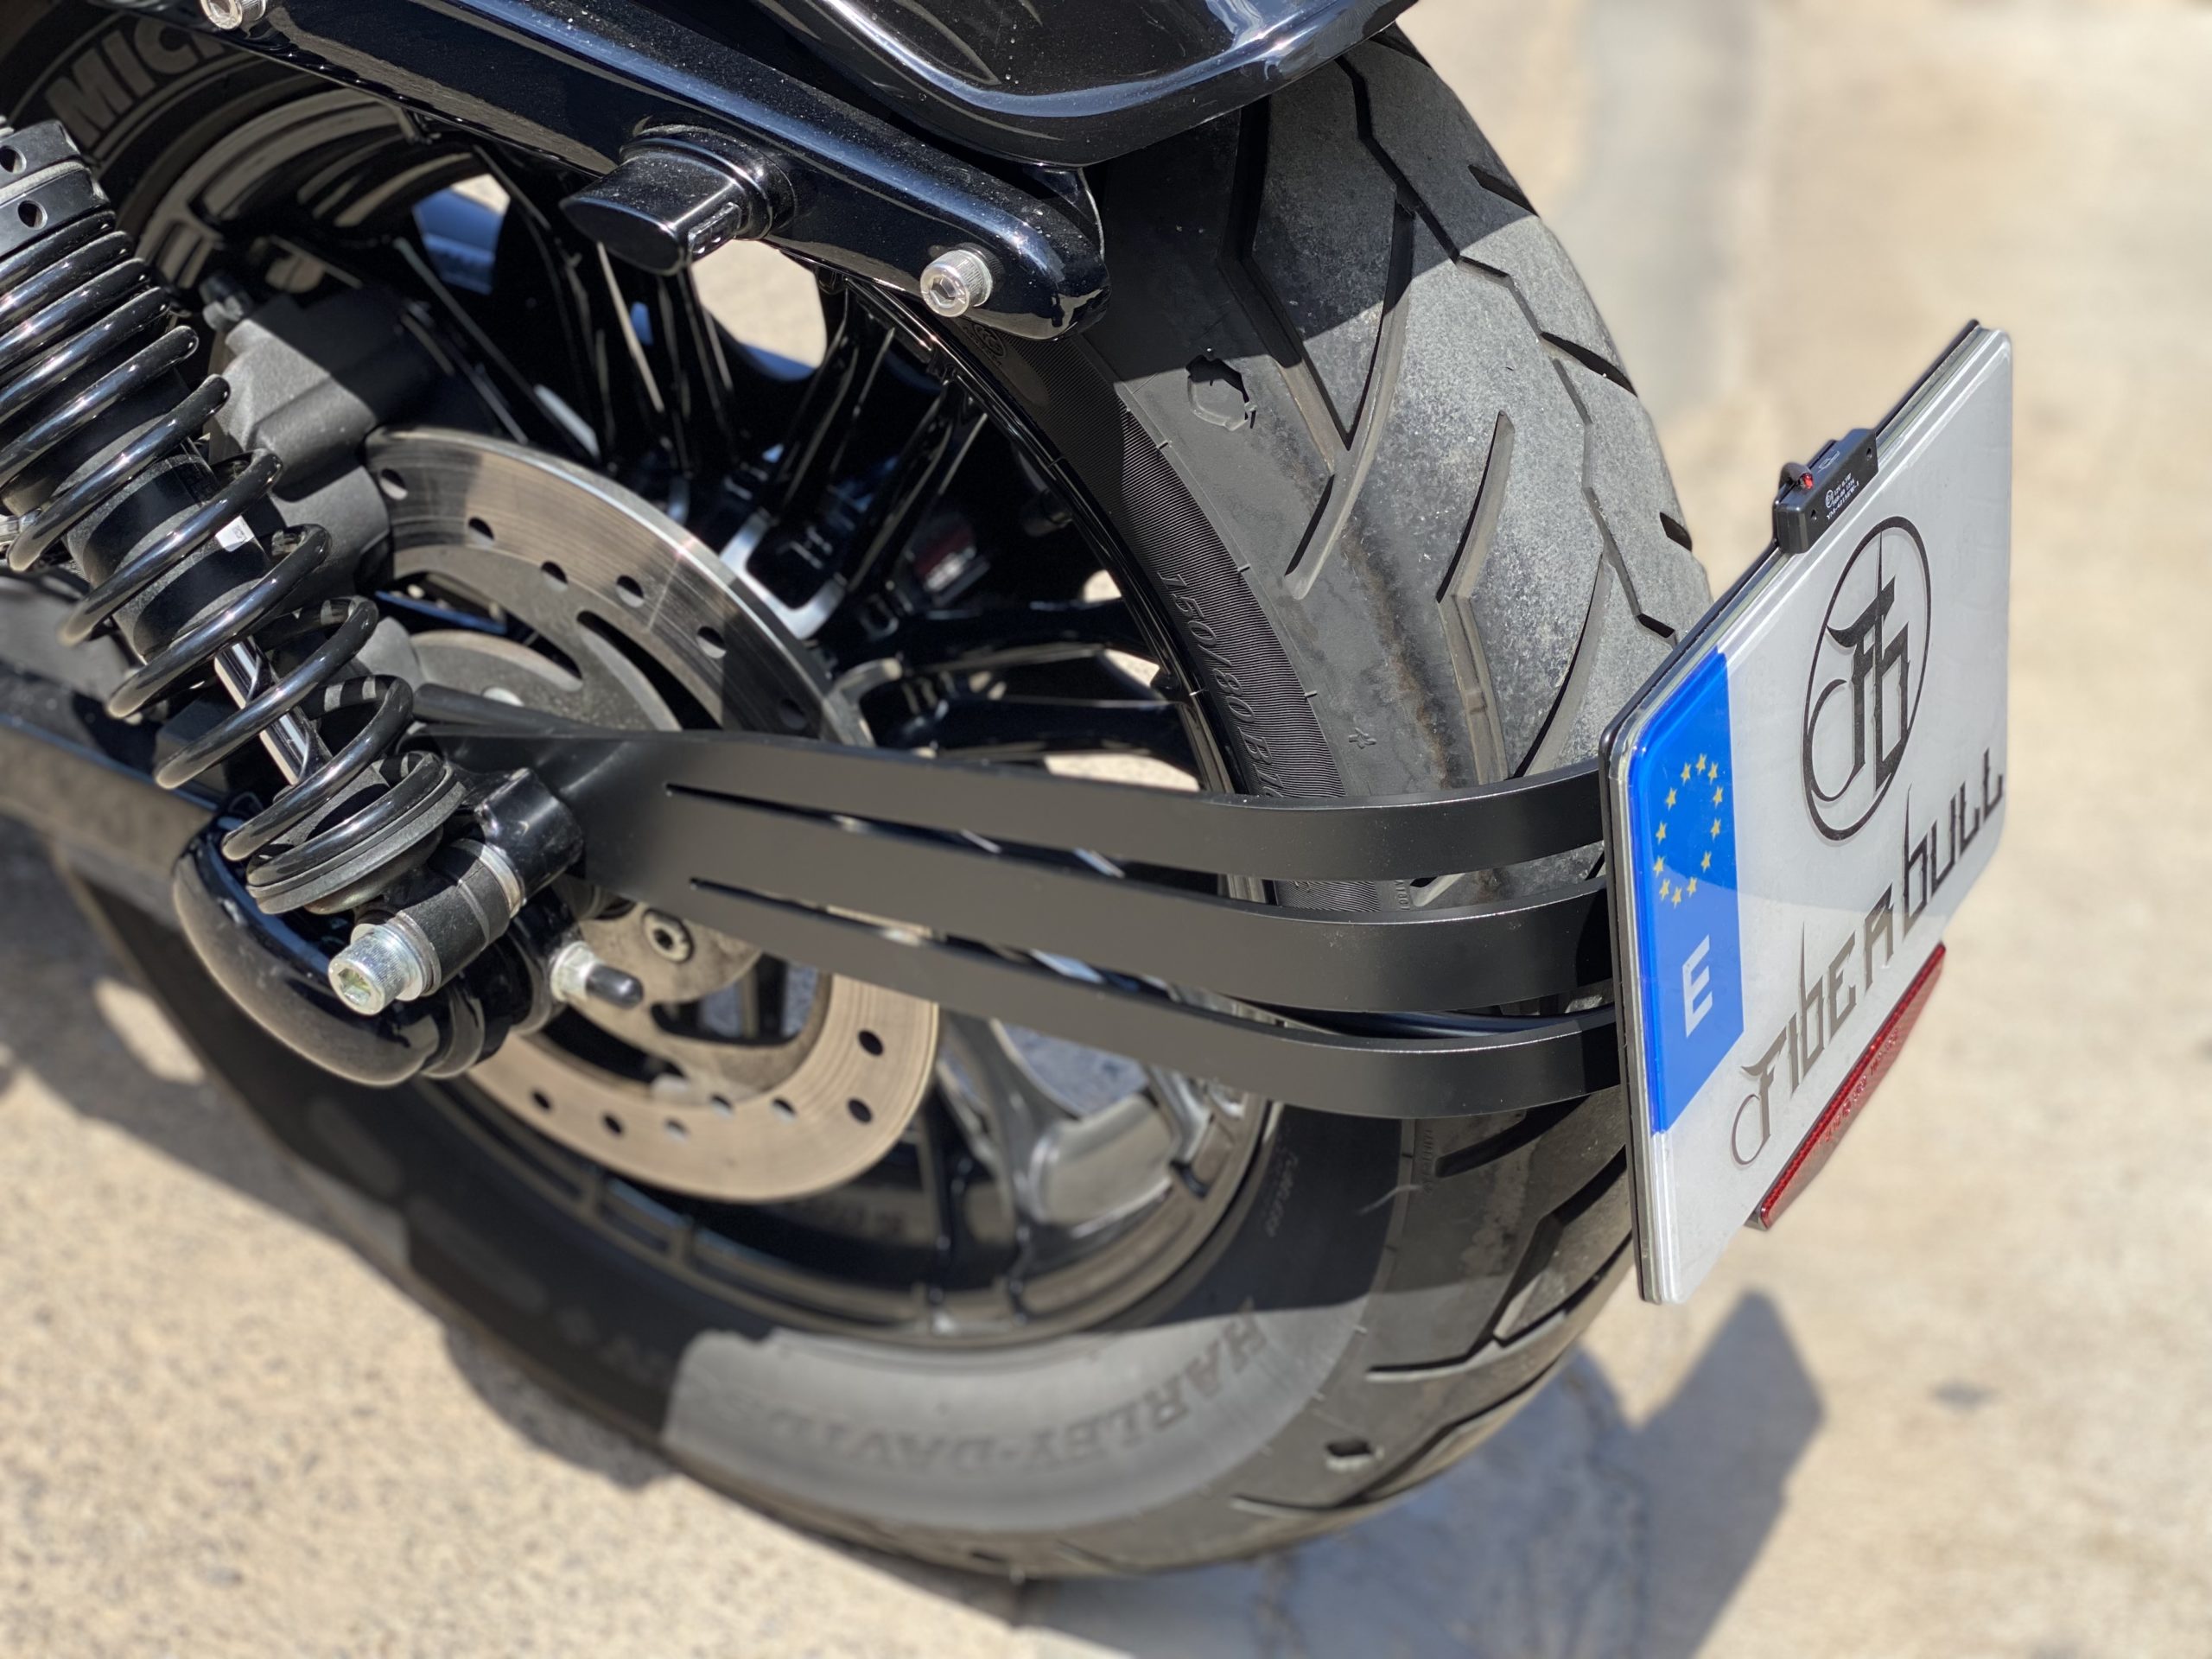 Movilizar inercia Traducción Soporte de matricula, portamatriculas para Harley Davidson Sportster modelo  Triple - Fiber Bull Motorcycles